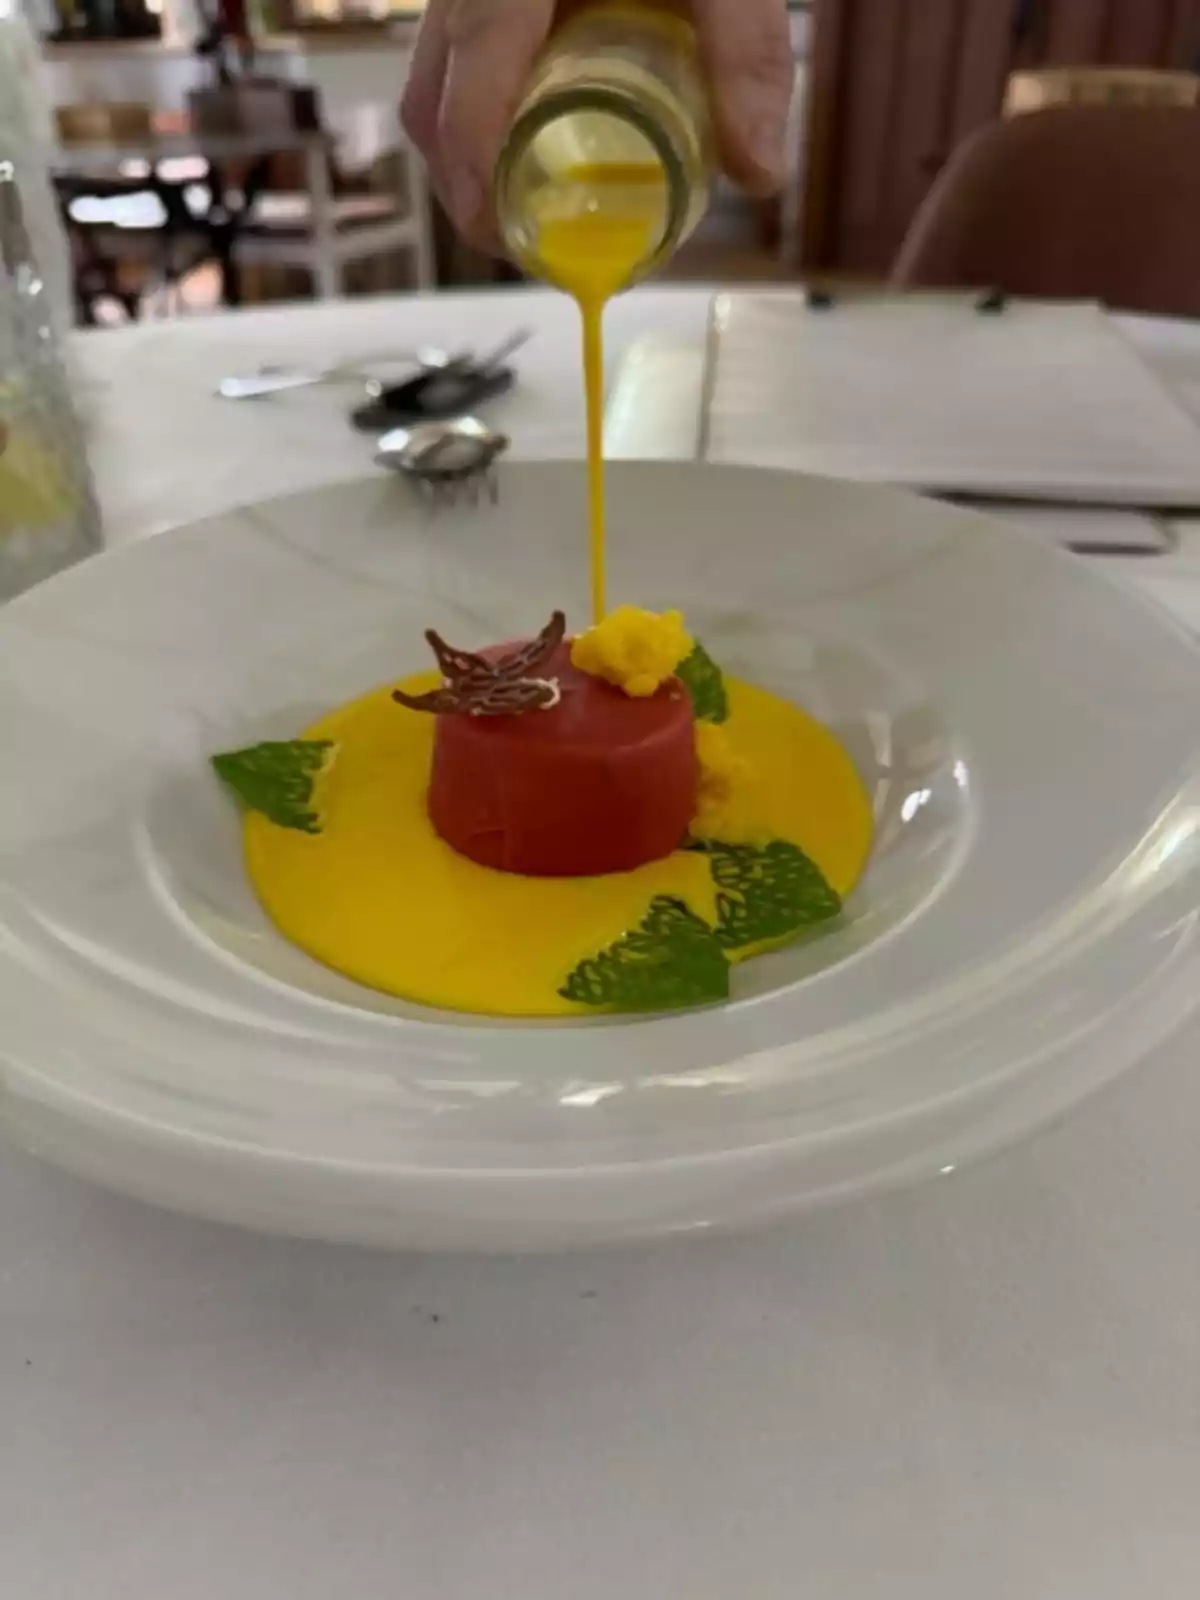 Una mano vertiendo una salsa amarilla sobre un plato con una presentación gourmet en un restaurante.